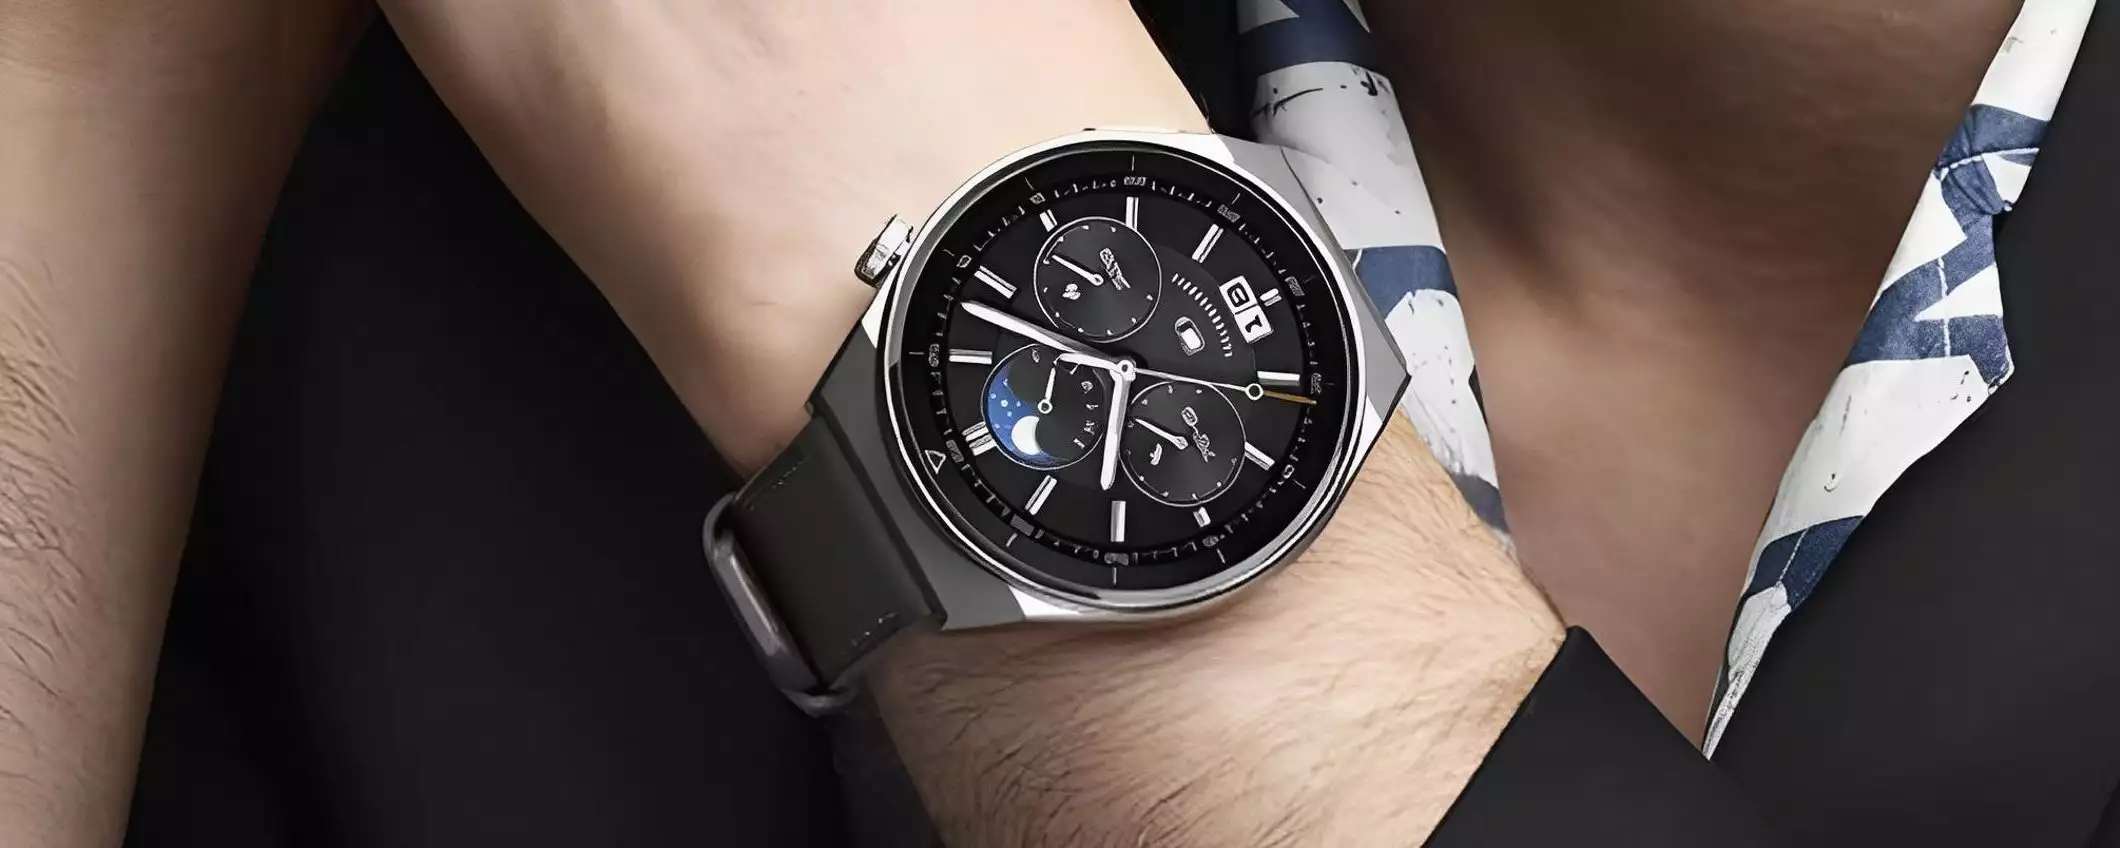 Smartwatch Huawei da acquistare SUBITO: il prezzo precipita (-124€)